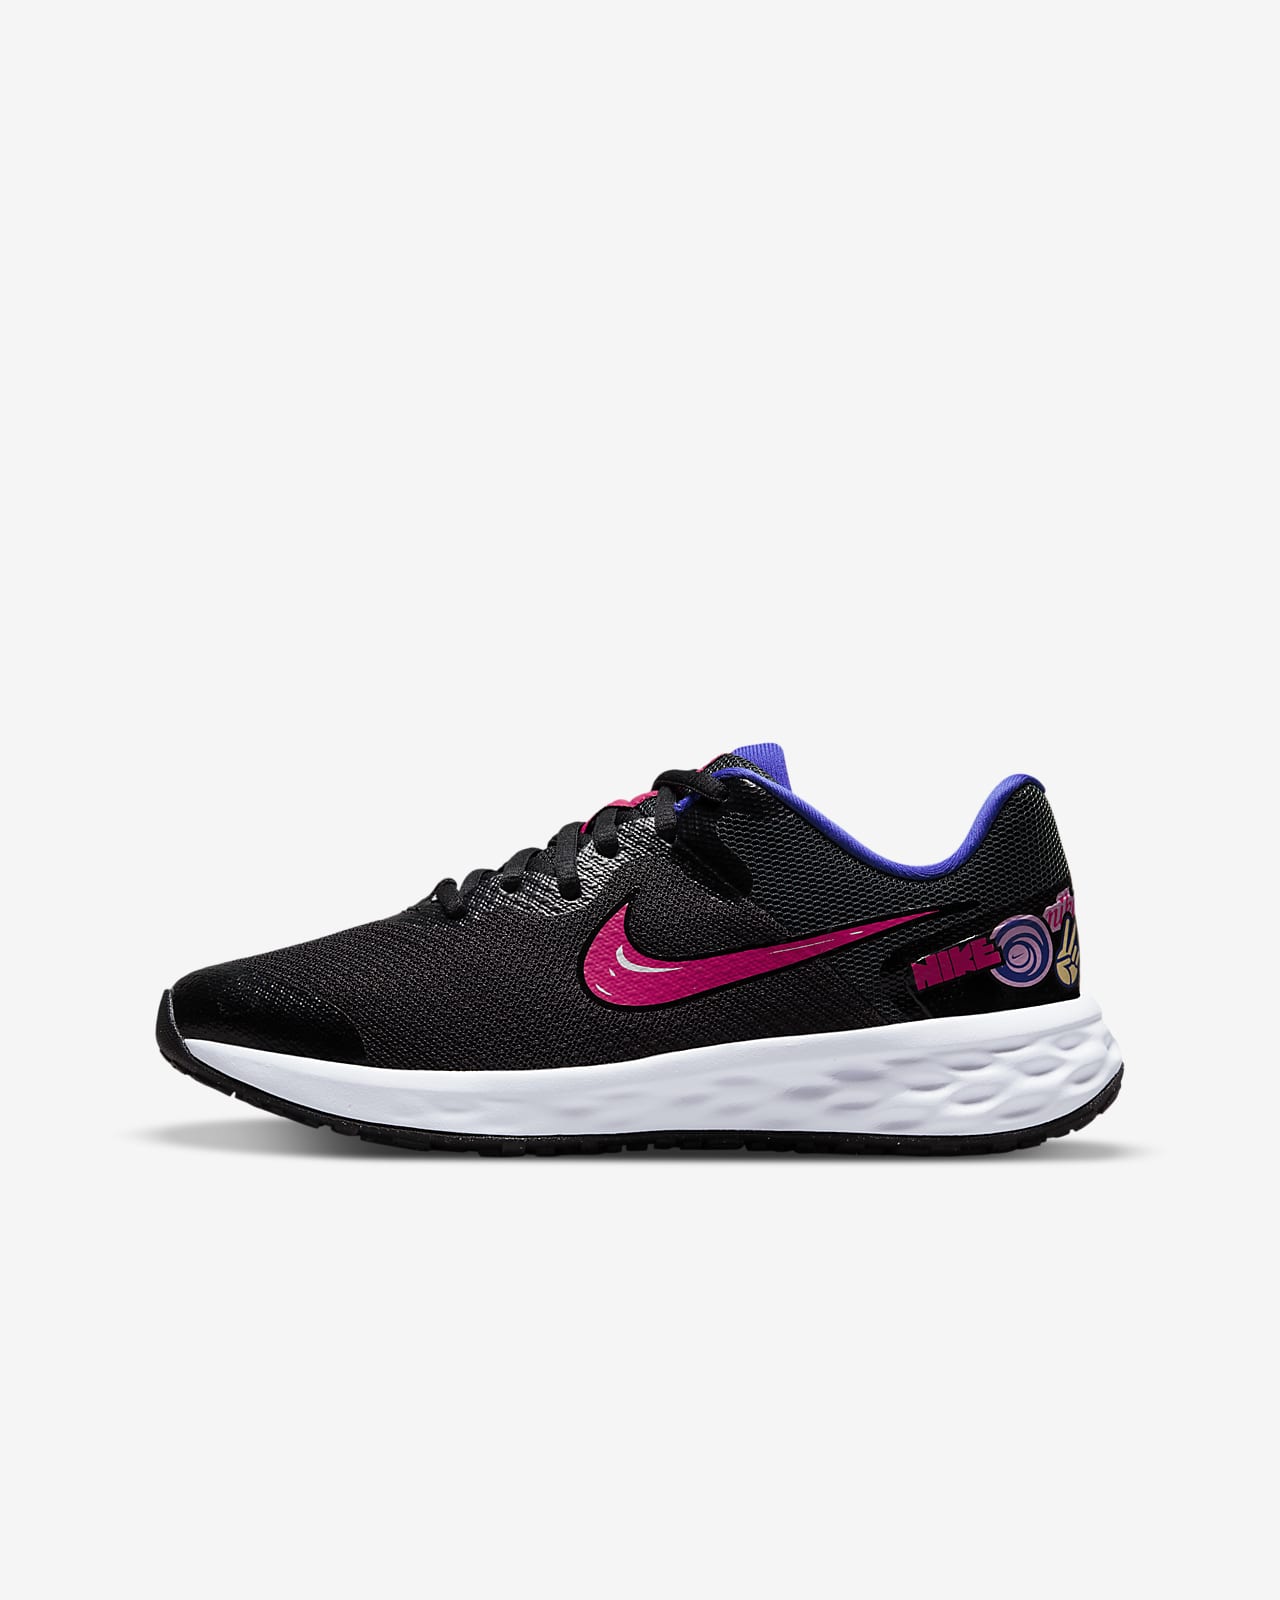 Παπούτσι για τρέξιμο σε δρόμο Nike Revolution 6 SE για μεγάλα παιδιά